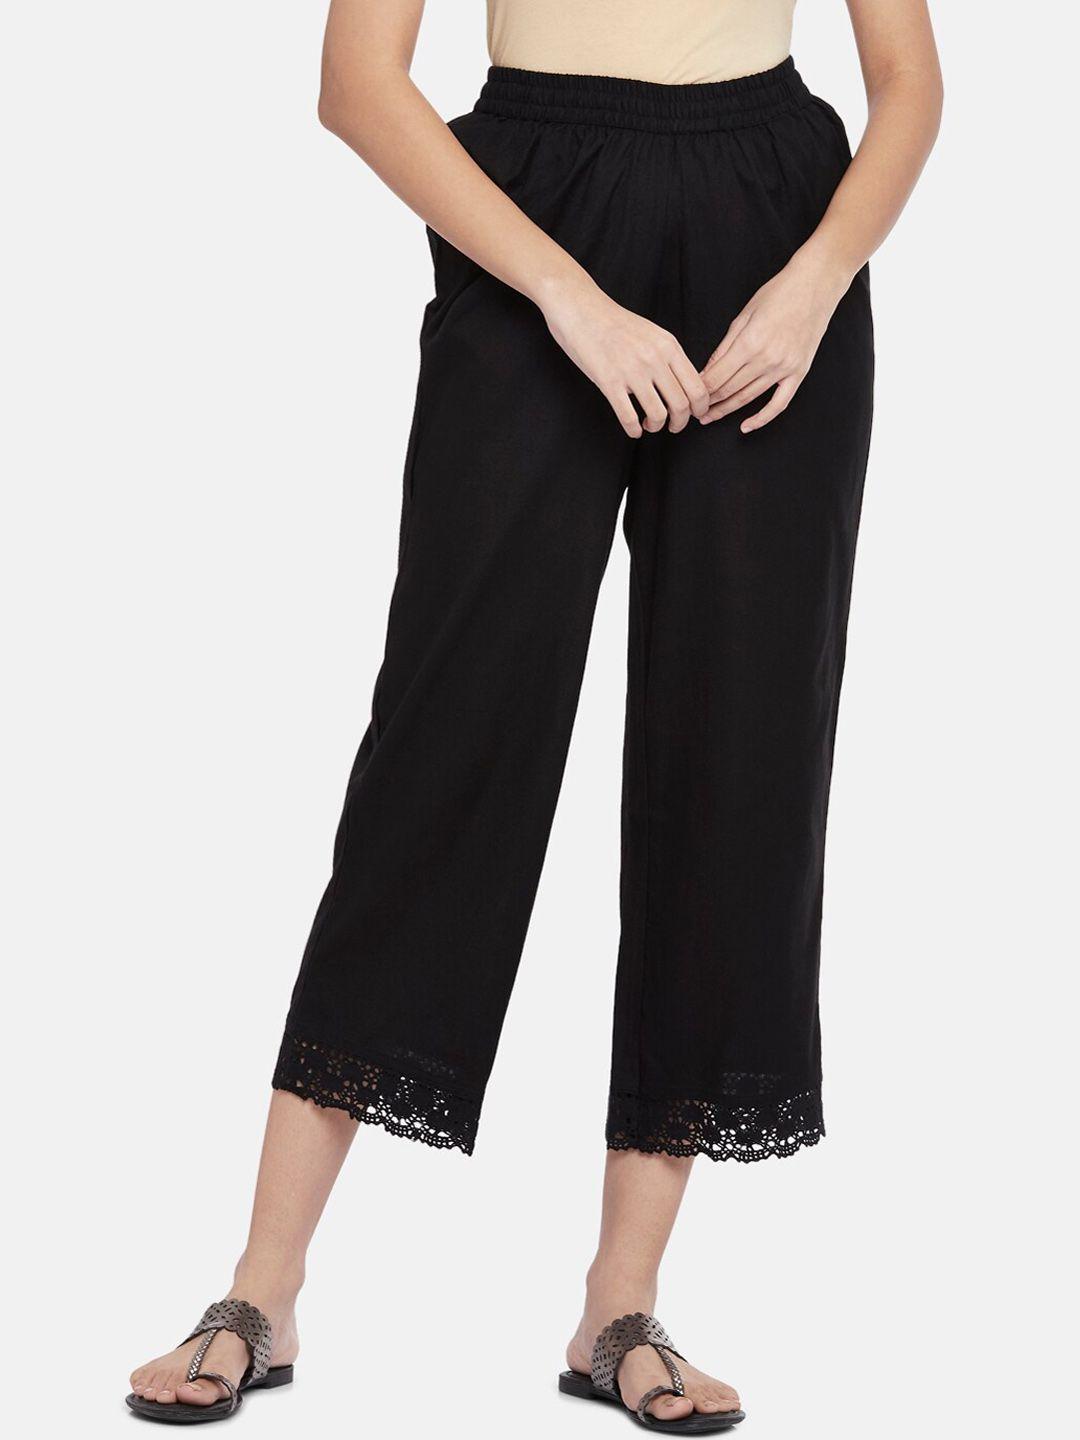 rangmanch by pantaloons women black cotton culottes